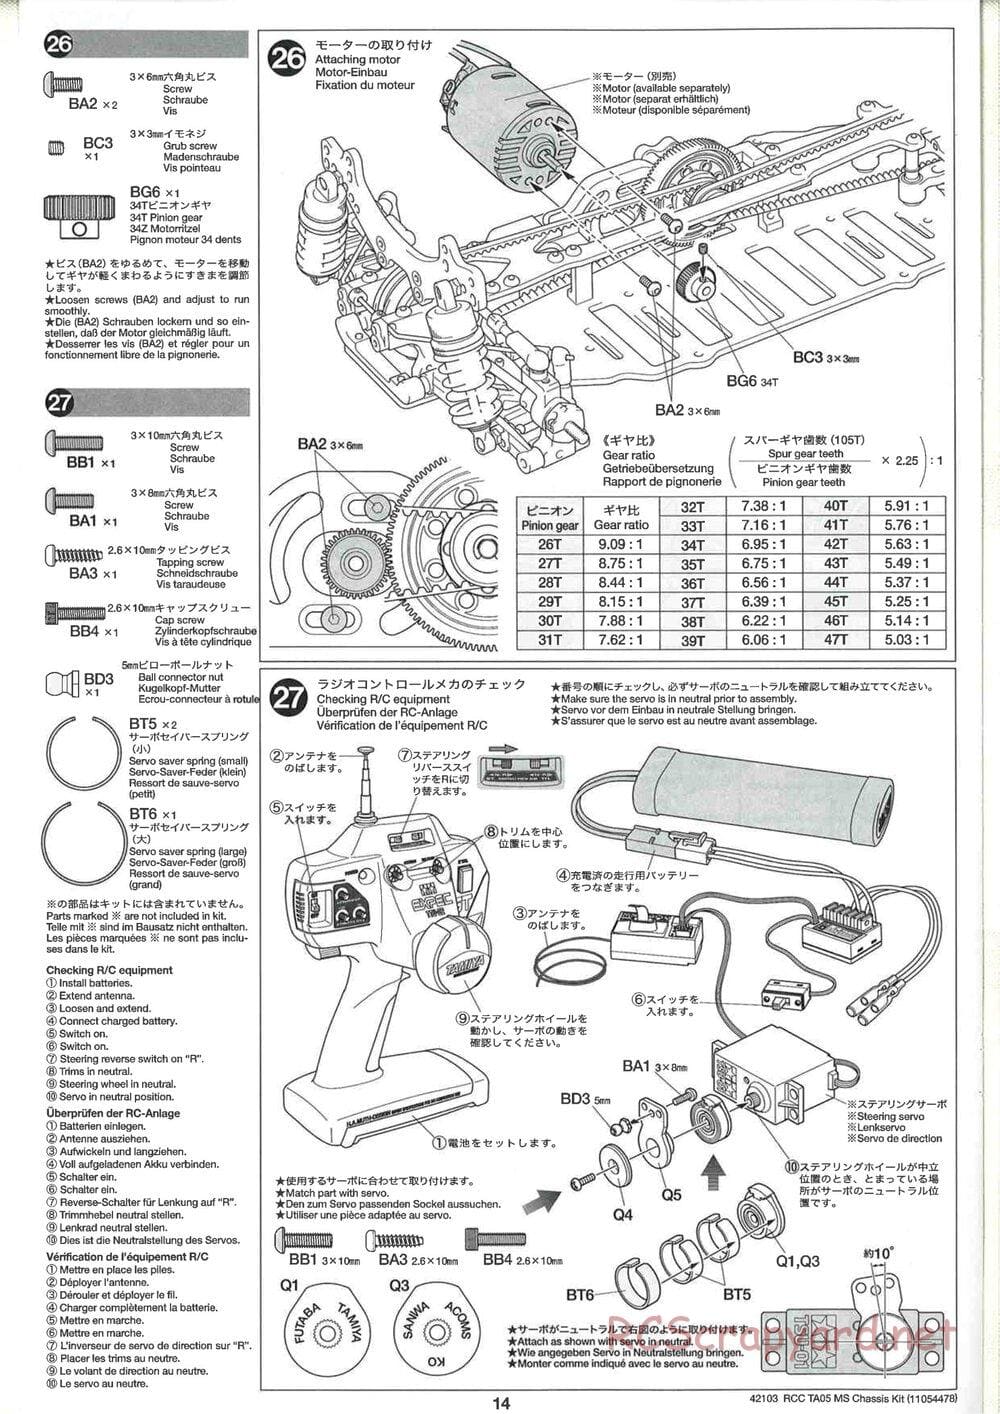 Tamiya - TA05 MS Chassis - Manual - Page 14